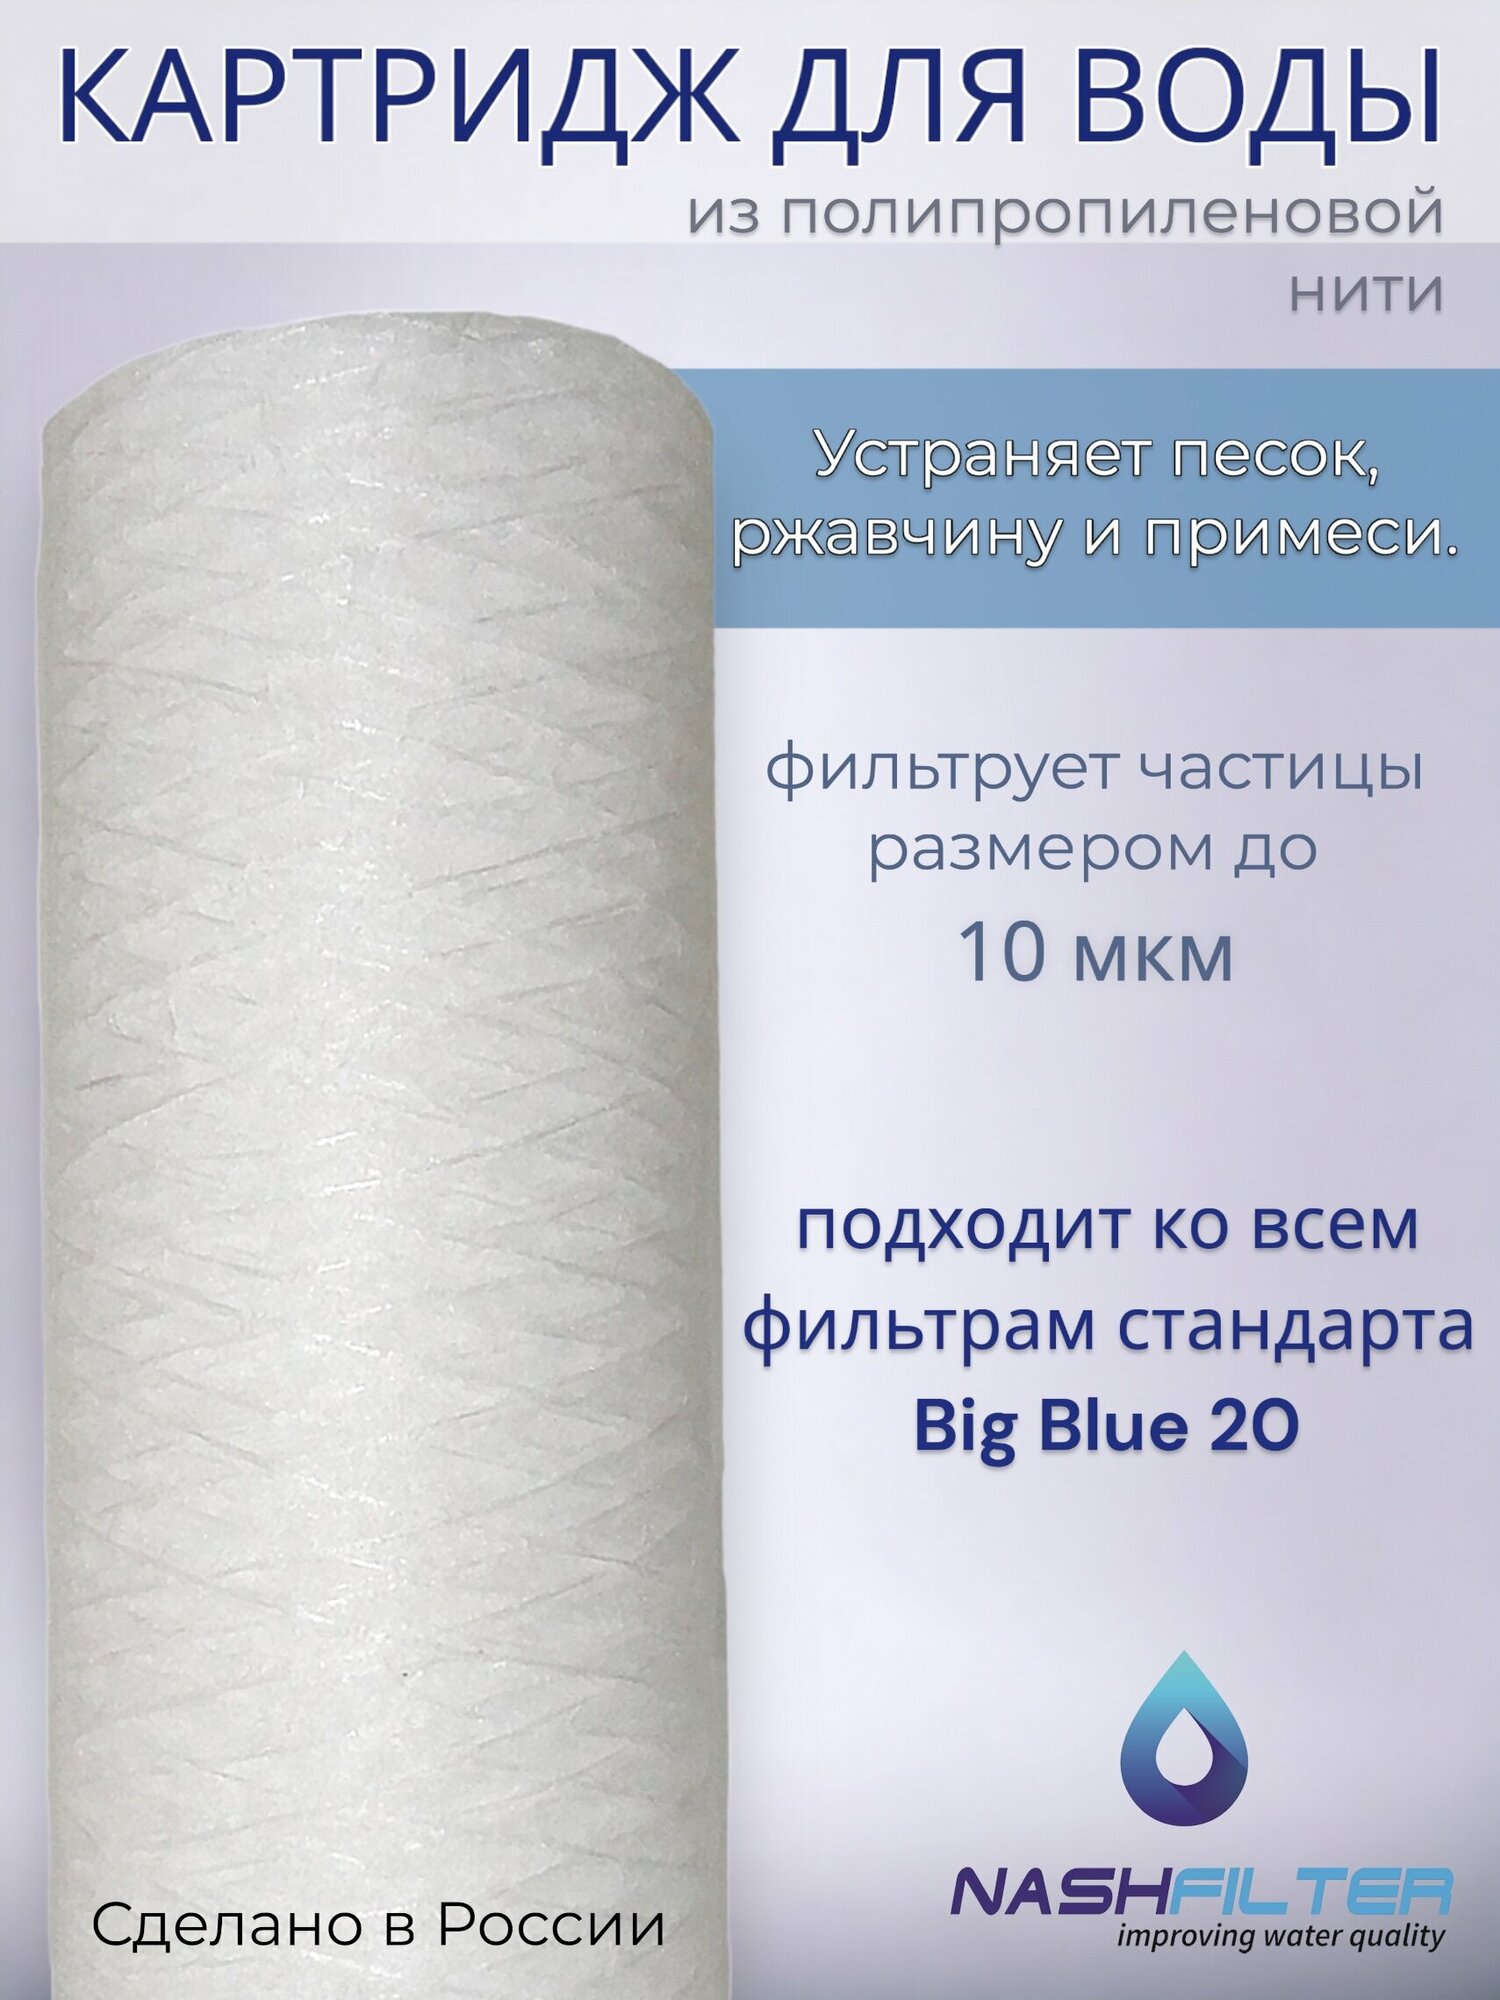 Картридж NASHFILTER для воды из полипропиленовой нити РS 20 Big Blue